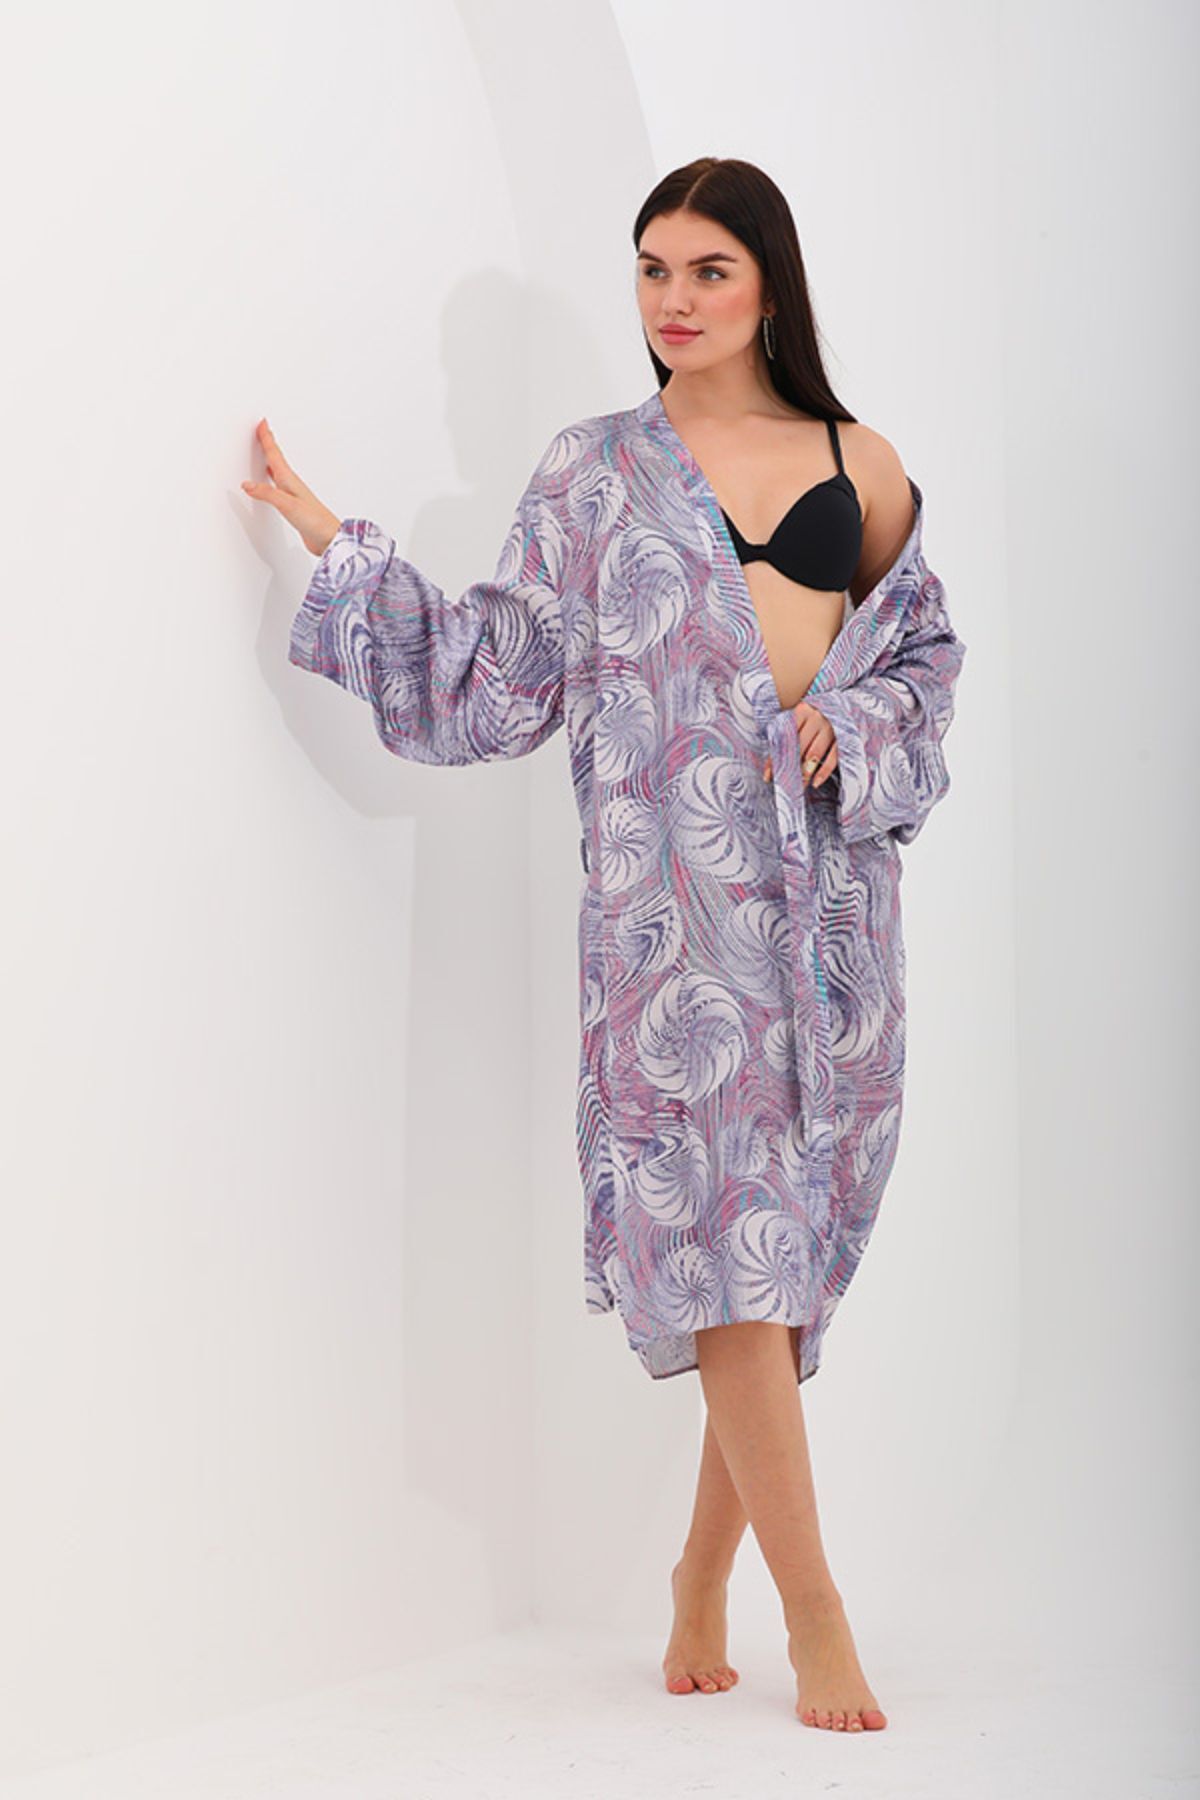 marecaldo Evde Kadın Giyim Modası Gecelik Sabahlık Modeli Unicorno Koyu Desen